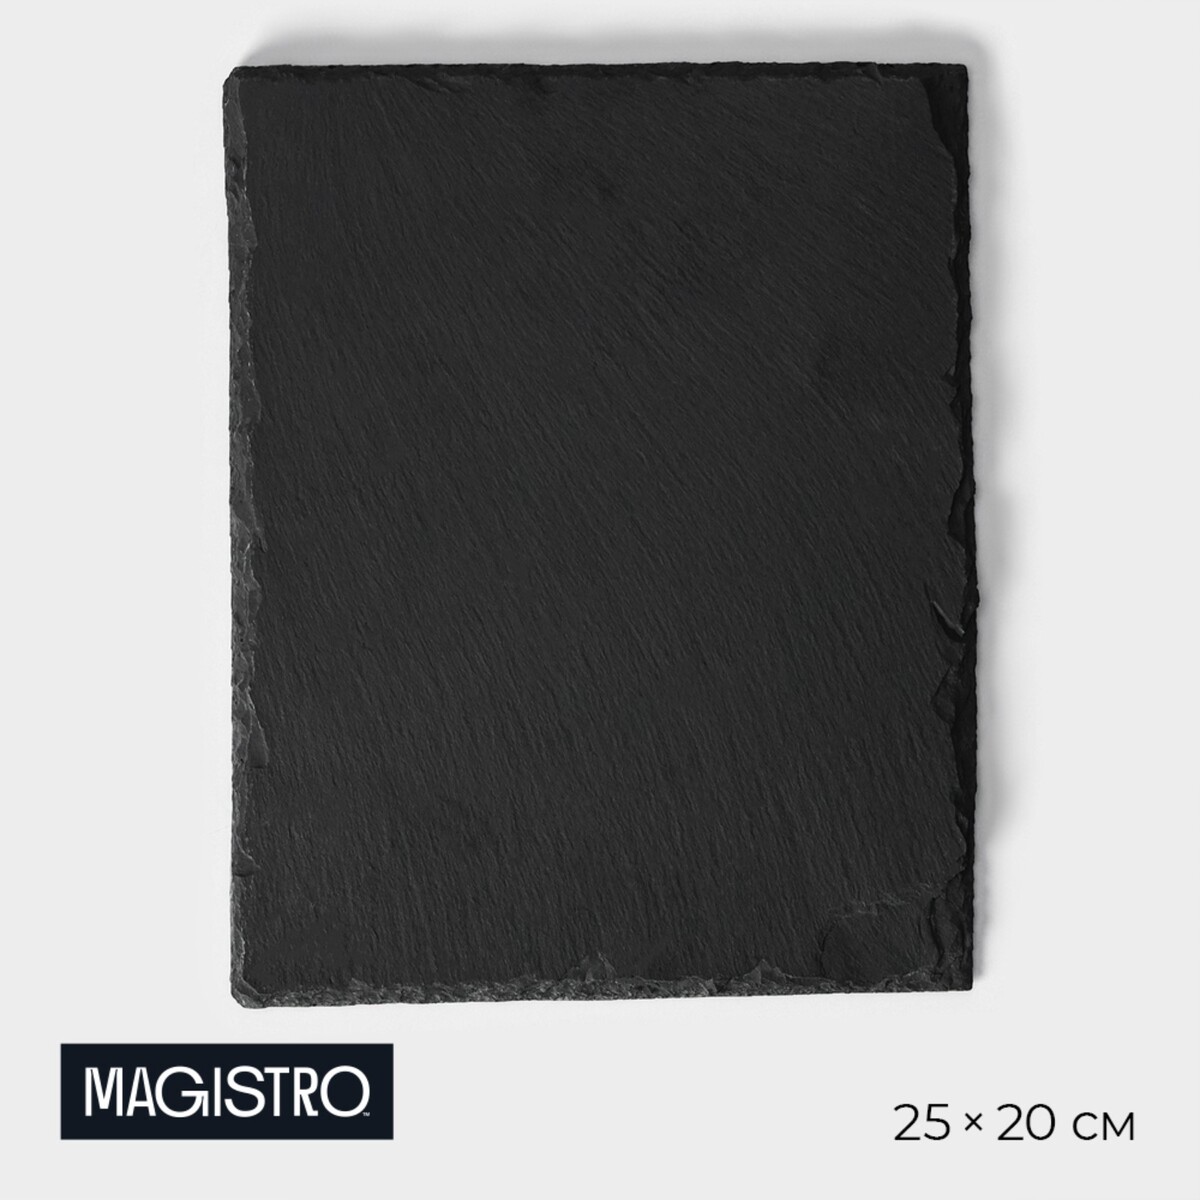 Доска для подачи из сланца magistro valley, 25×20 см доска для подачи magistro valley из сланца 30×29 см в виде сердца